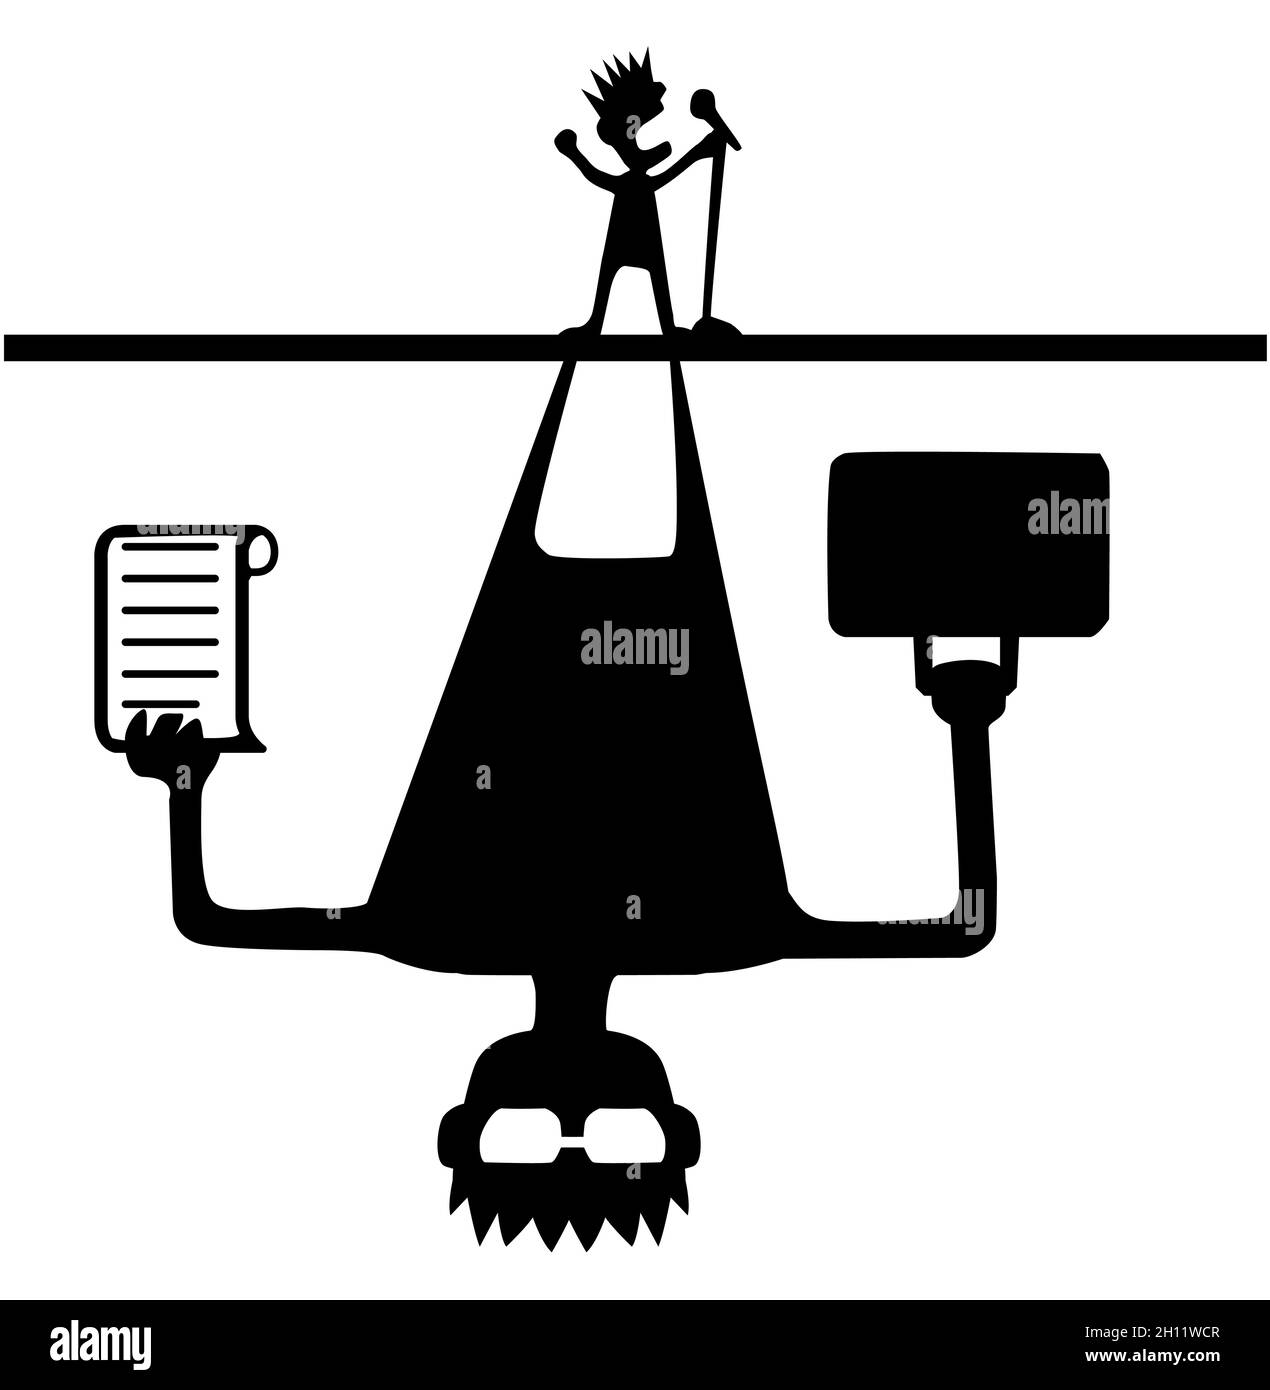 Manager de promoteur de musique ombre qui menace sur l'interprète chanteur personnage de dessin animé silhouette noire, illustration vectorielle, vertical, isolé, sur blanc Illustration de Vecteur